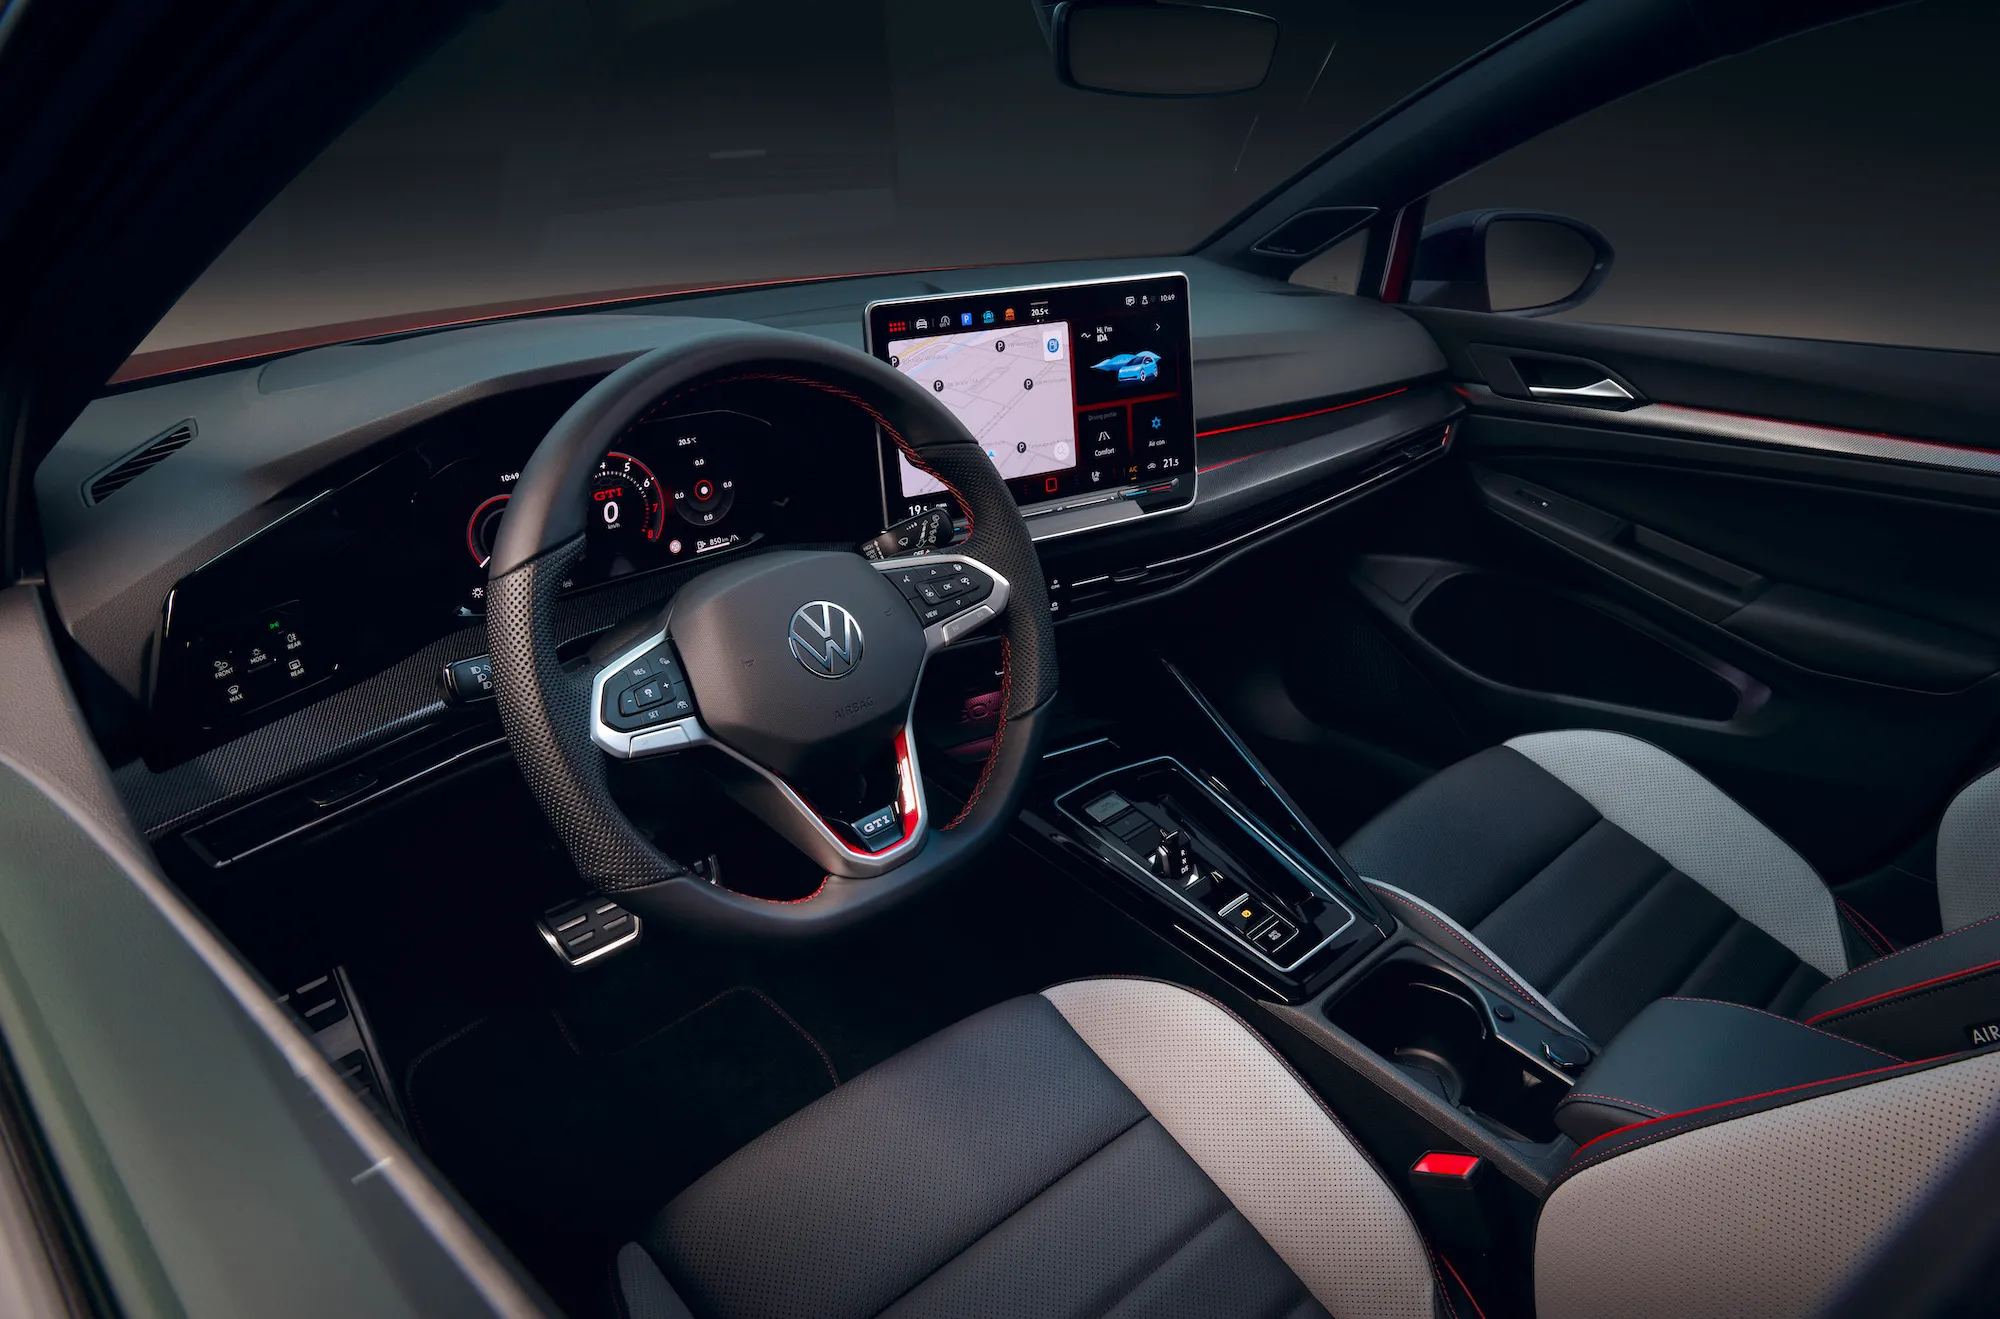 Un'immagine che mostra l'interno di una nuova Volkswagen Gold, compreso il volante e lo schermo touch.